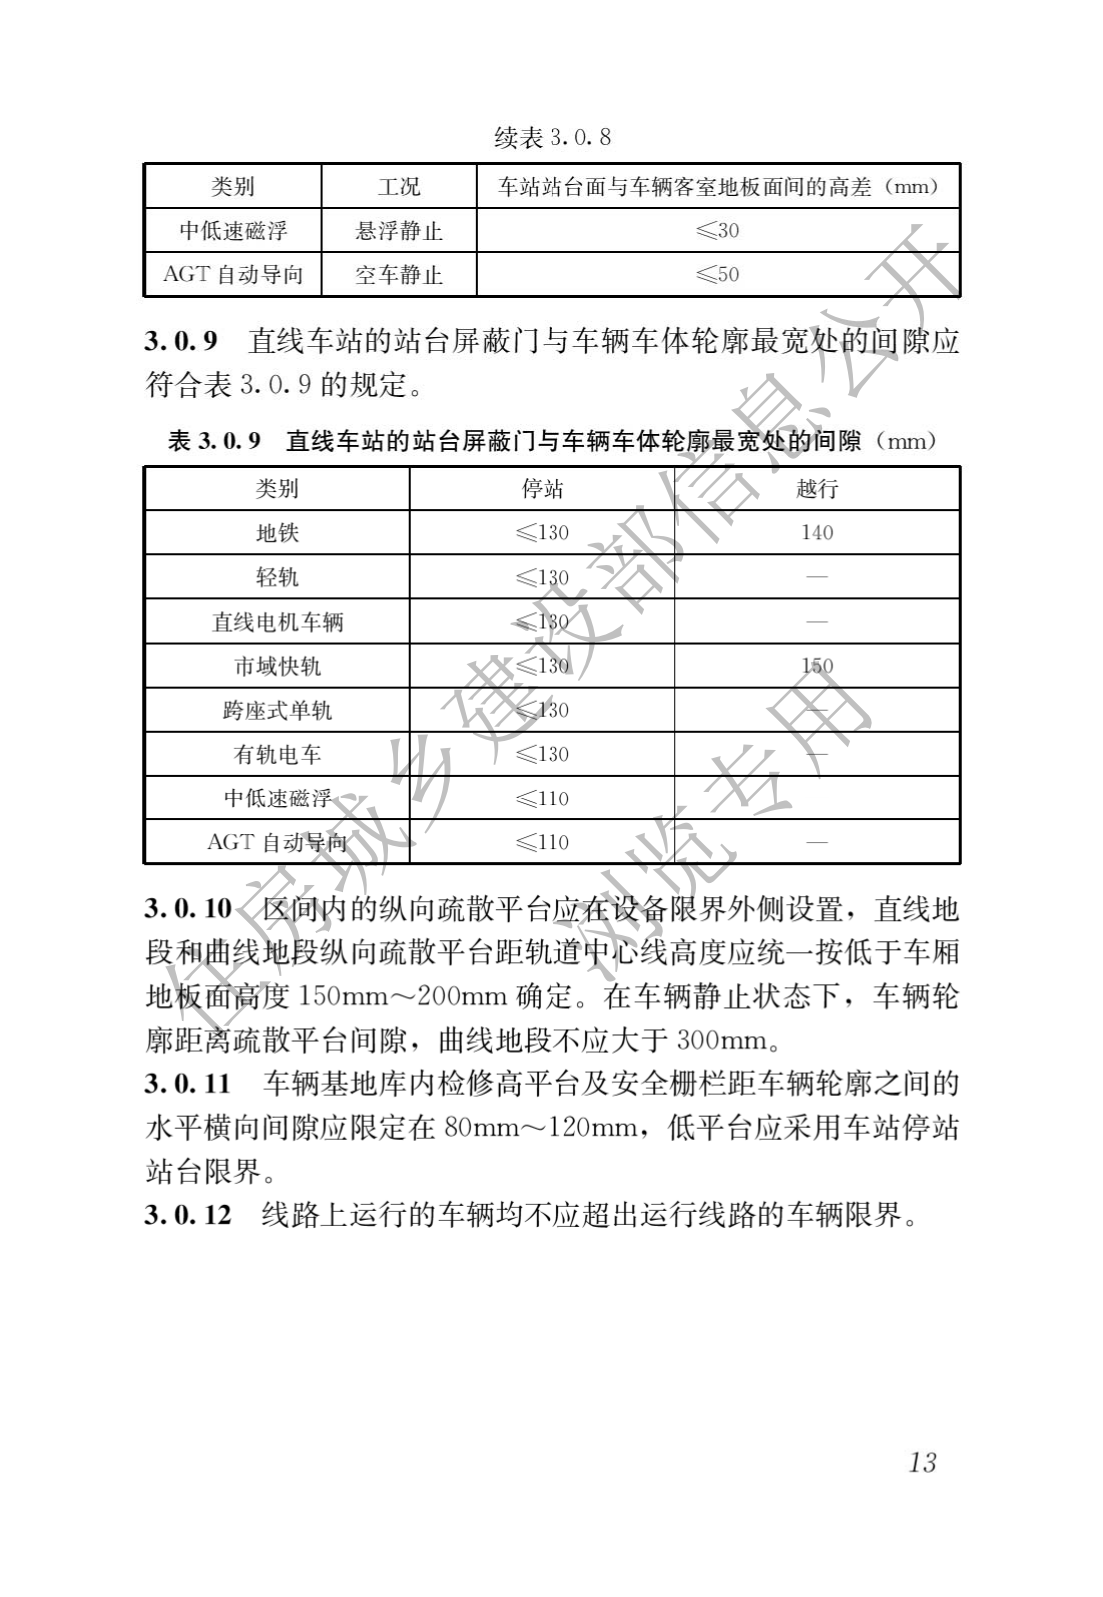 住房和城鄉建設部關于發布國家标準 《城市軌道交通工(gōng)程項目規範》的公告(圖17)